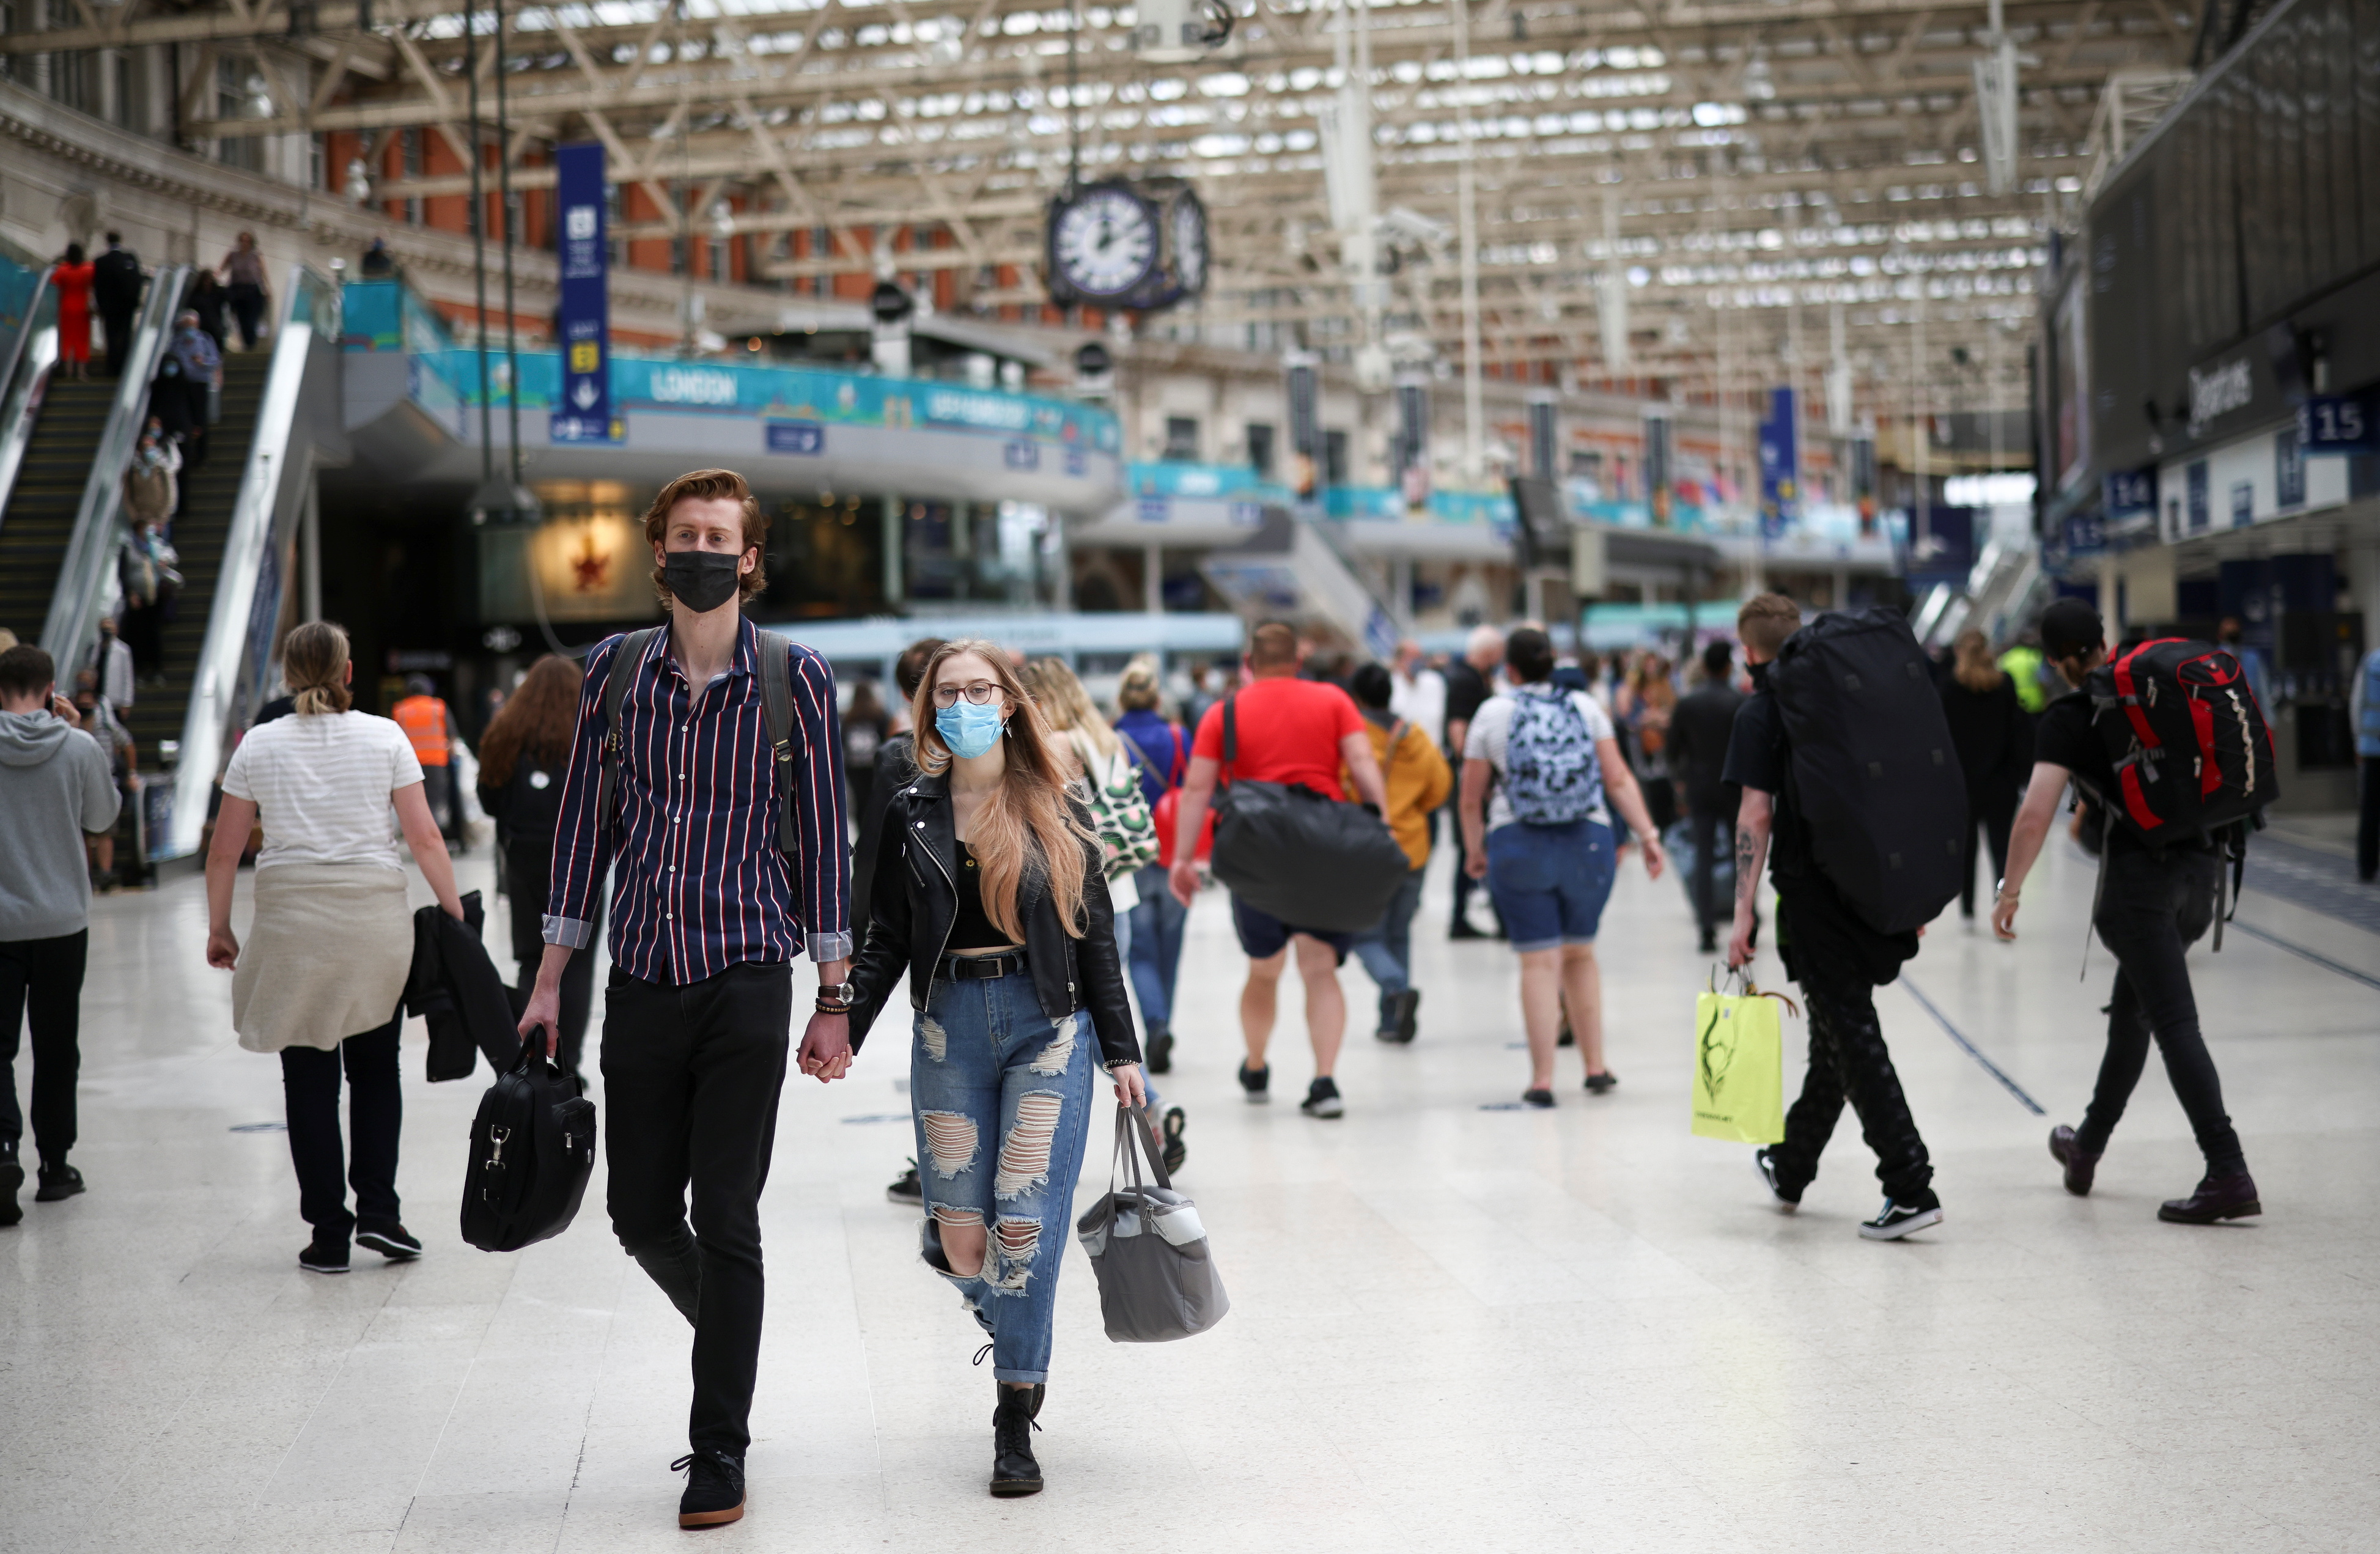 Des gens, certains portant des masques protecteurs, traversent la gare de Waterloo, au milieu de la pandémie de maladie à coronavirus (COVID-19), à Londres, Grande-Bretagne, le 4 juillet 2021. REUTERS/Henry Nicholls